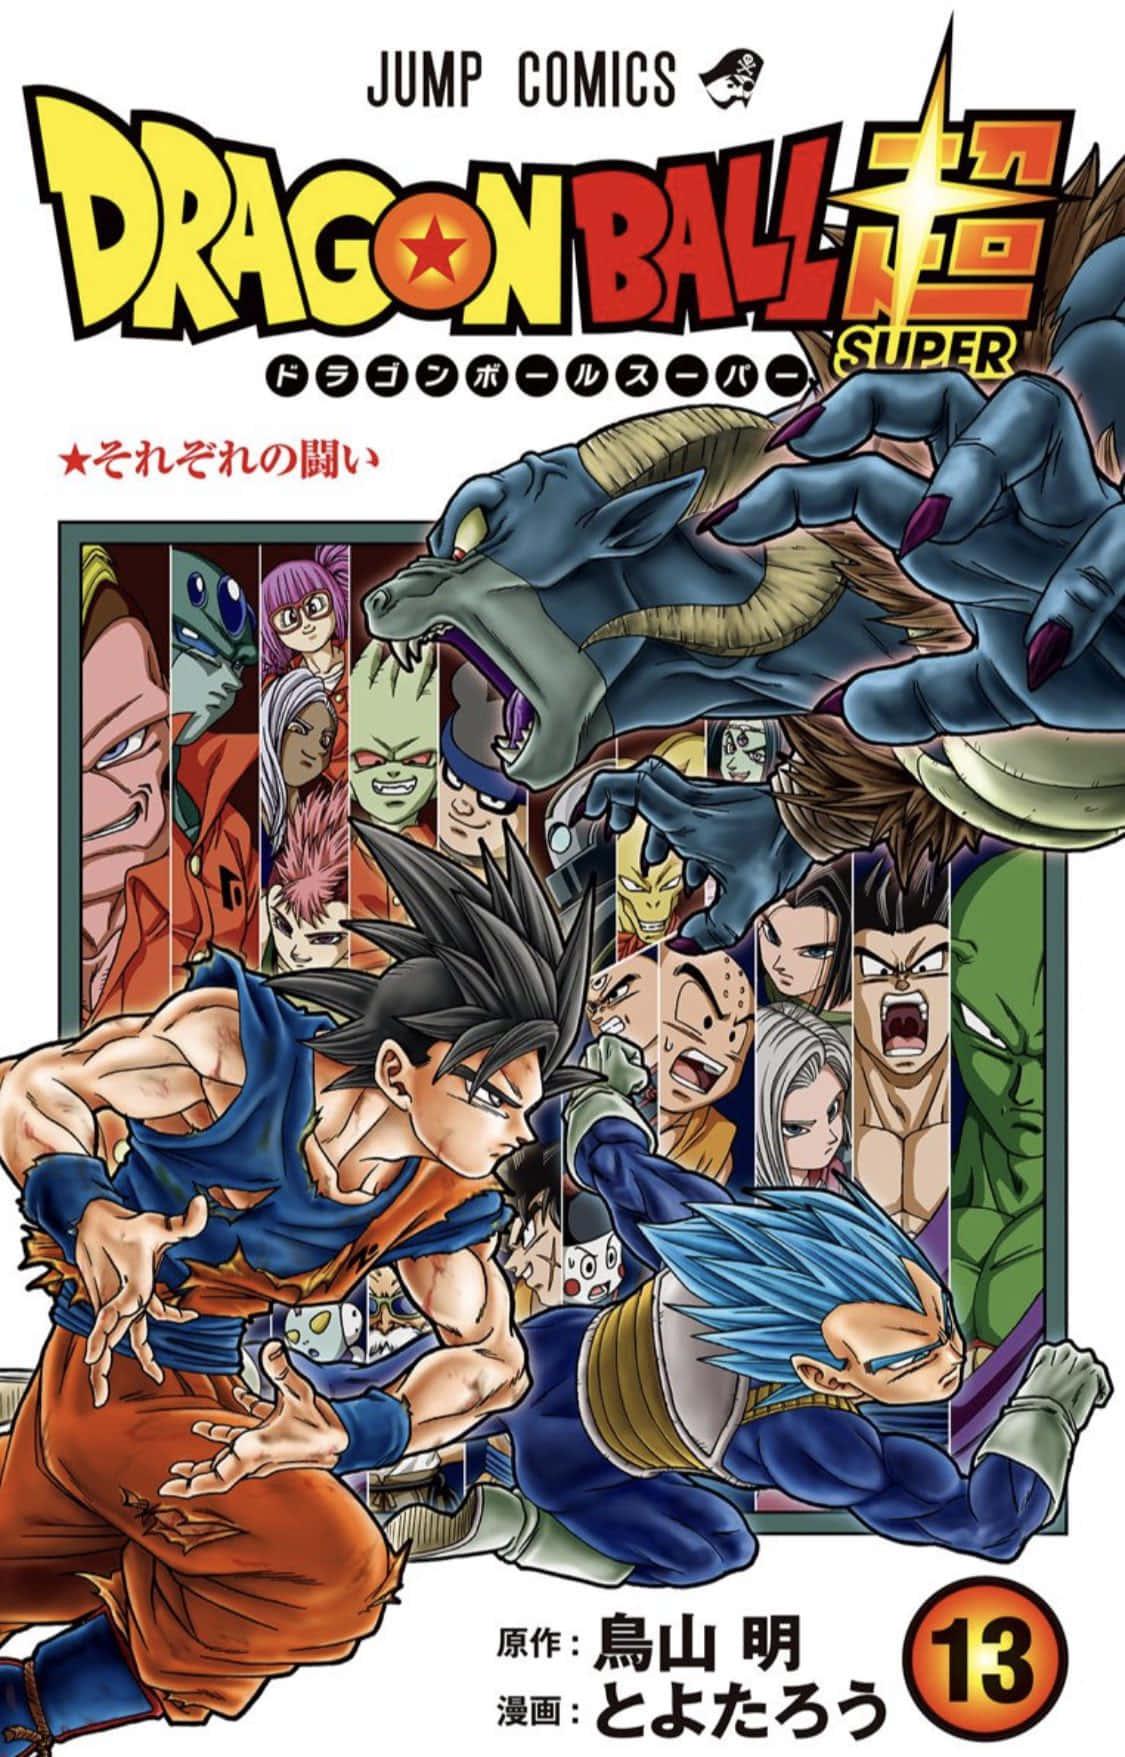 Goku Turns Super Saiyan in Dragon Ball Super Manga Wallpaper